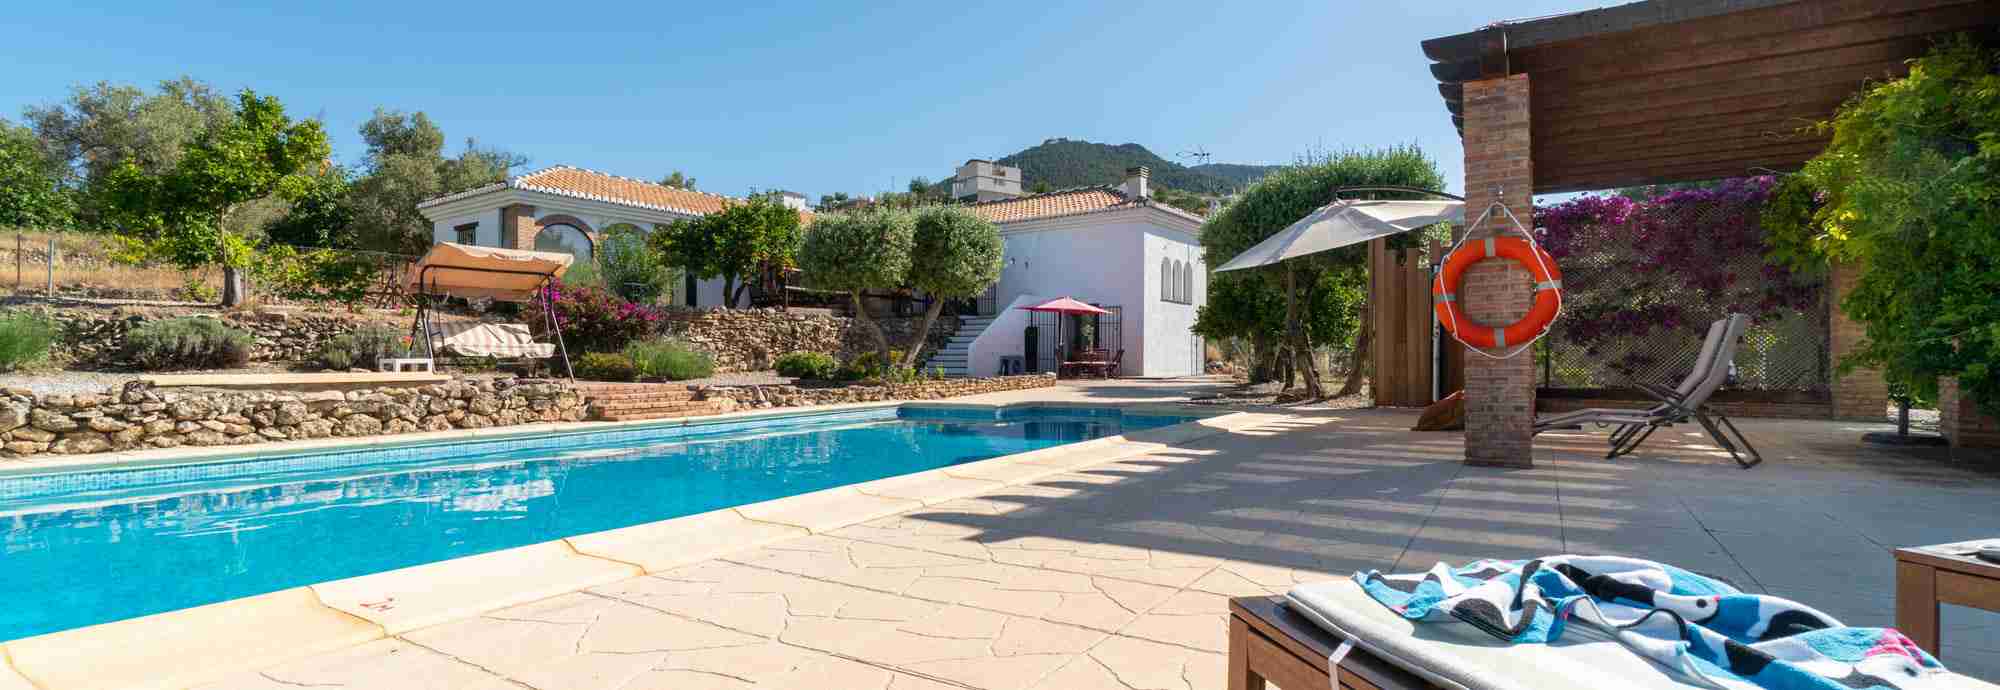 Casa rural con piscina climatizada de 10 metros cerca de Granada y playas